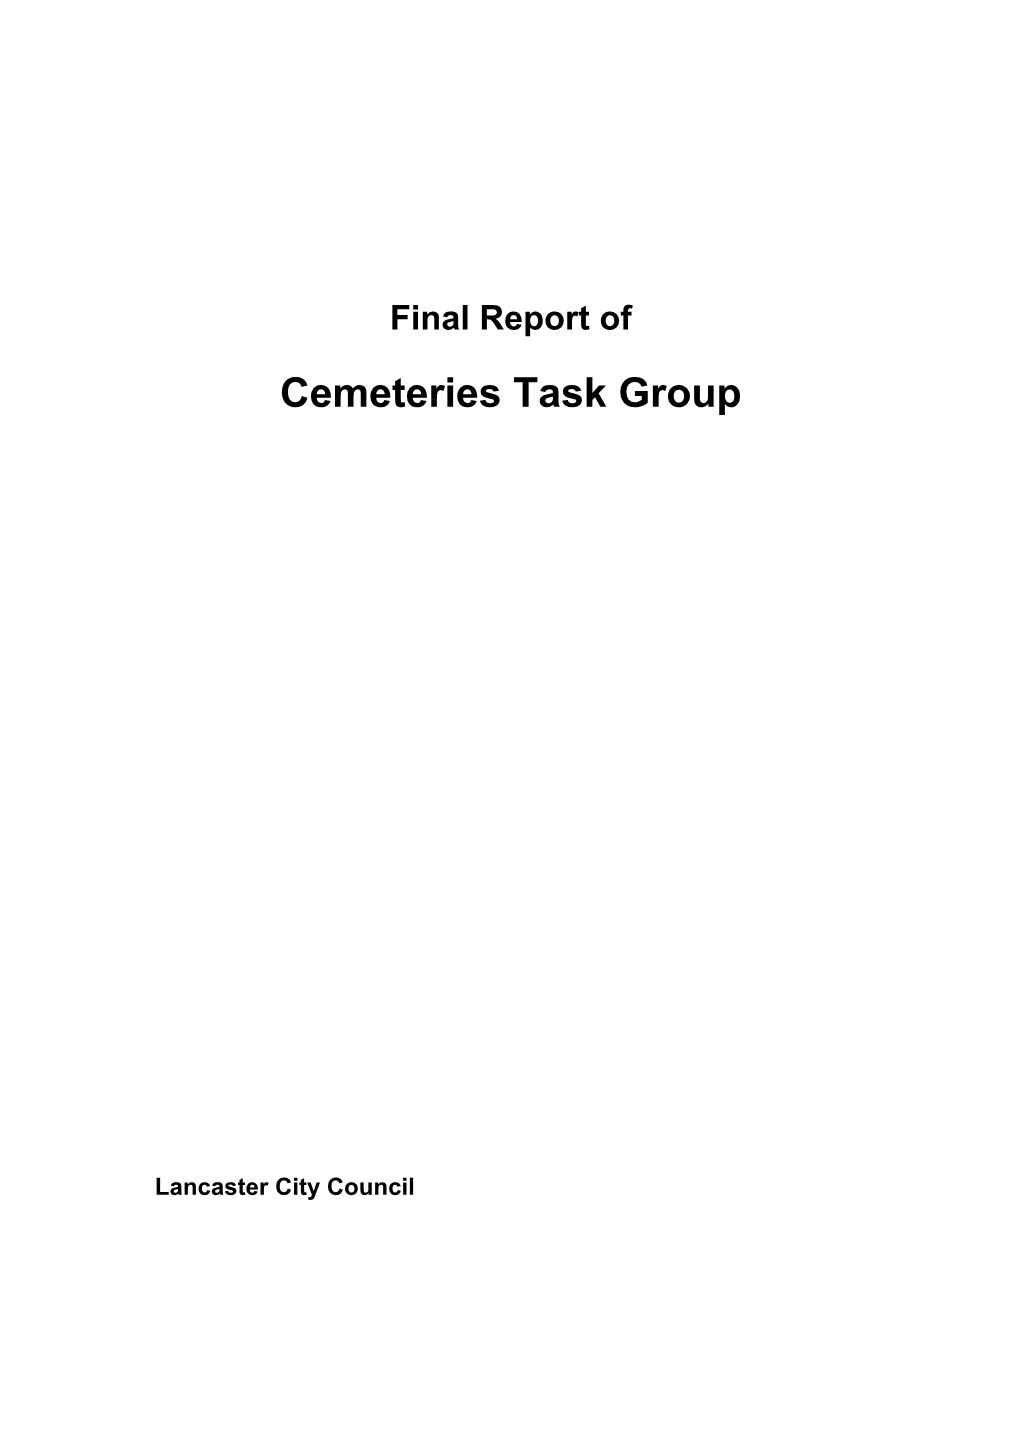 Cemeteries Task Group